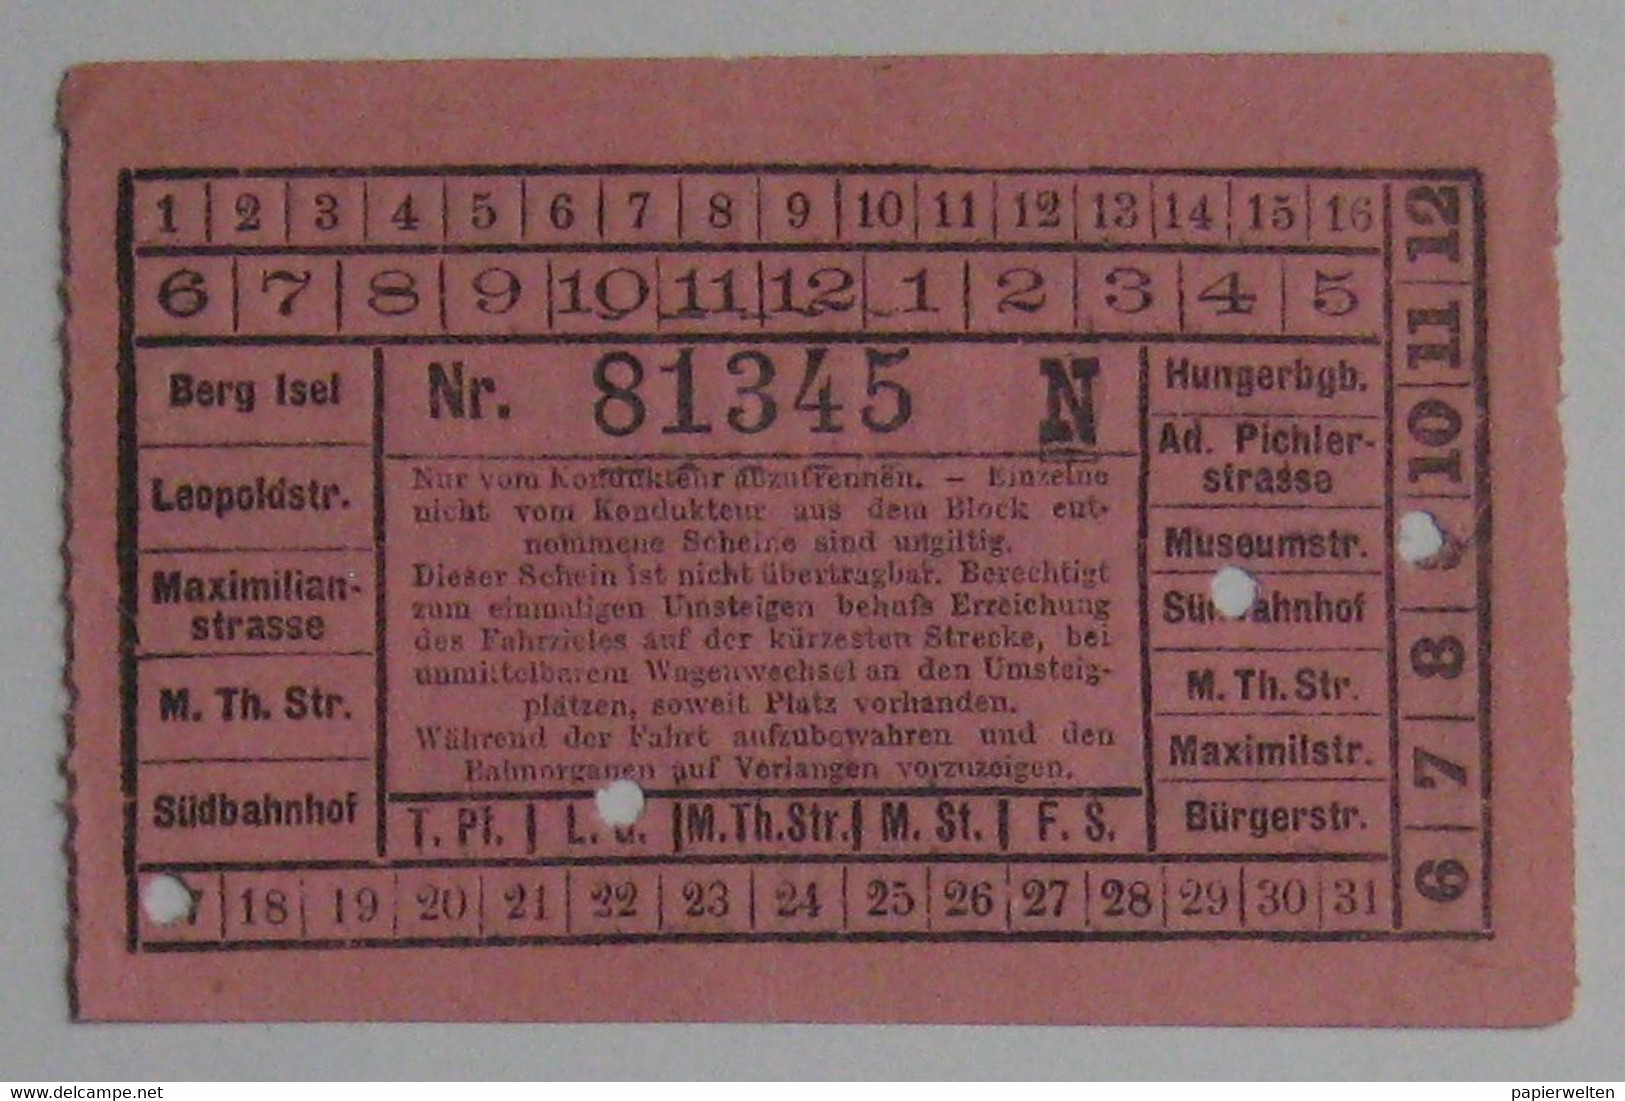 Innsbruck - Fahrschein Der Strassenbahn / Werbung: 1. Spezialgeschäft Für Chocoladen ... Val. Riggenmann / Schokolade - Europe